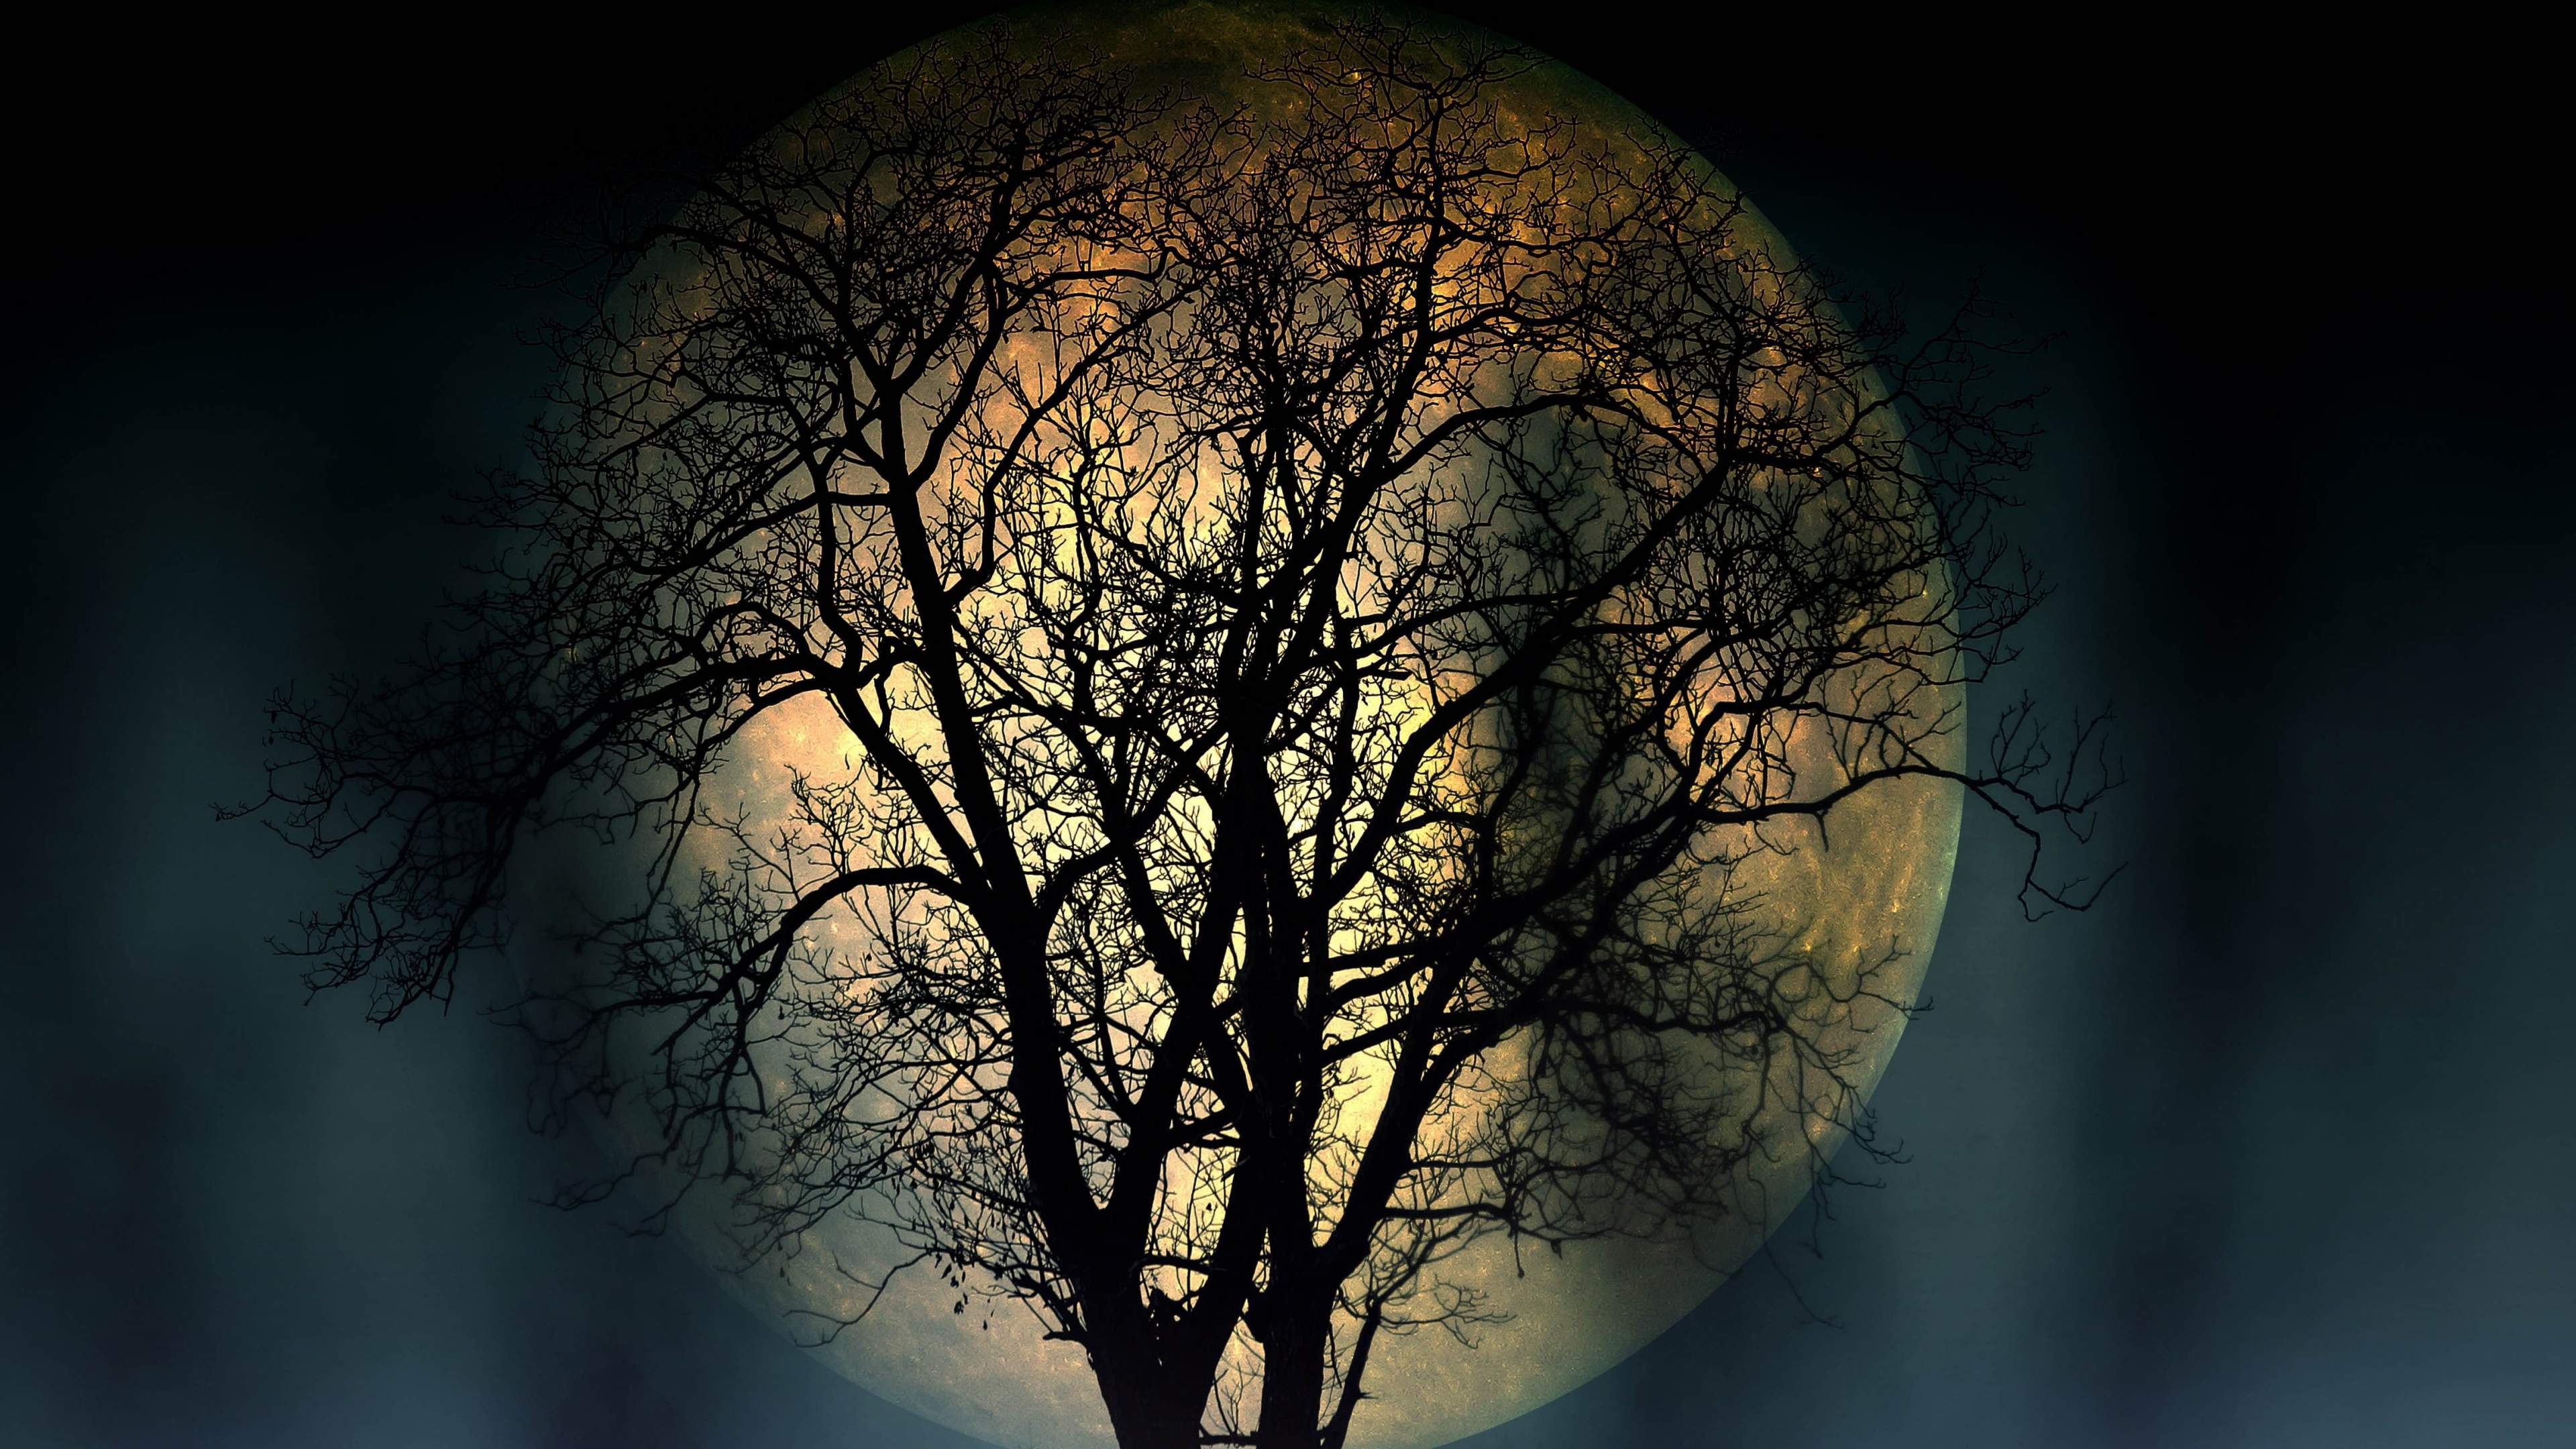 Tree full moon dark night 4k uhd high resolution wallpapers 3840x2160